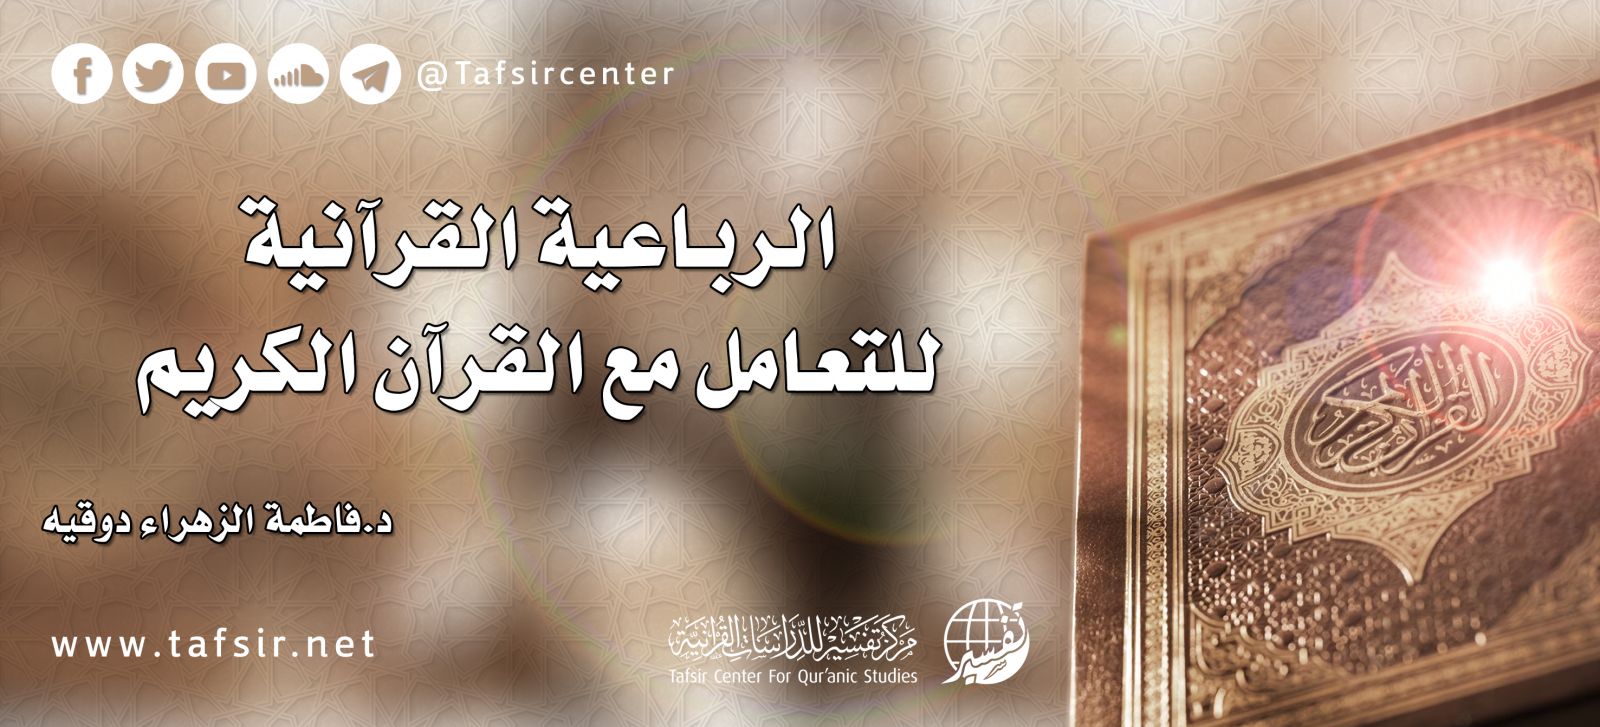 اهمية القران الكريم فى حياة الانسان والمجتمع - أهمية معرفة القرآن الكريم في بناء الإيمان